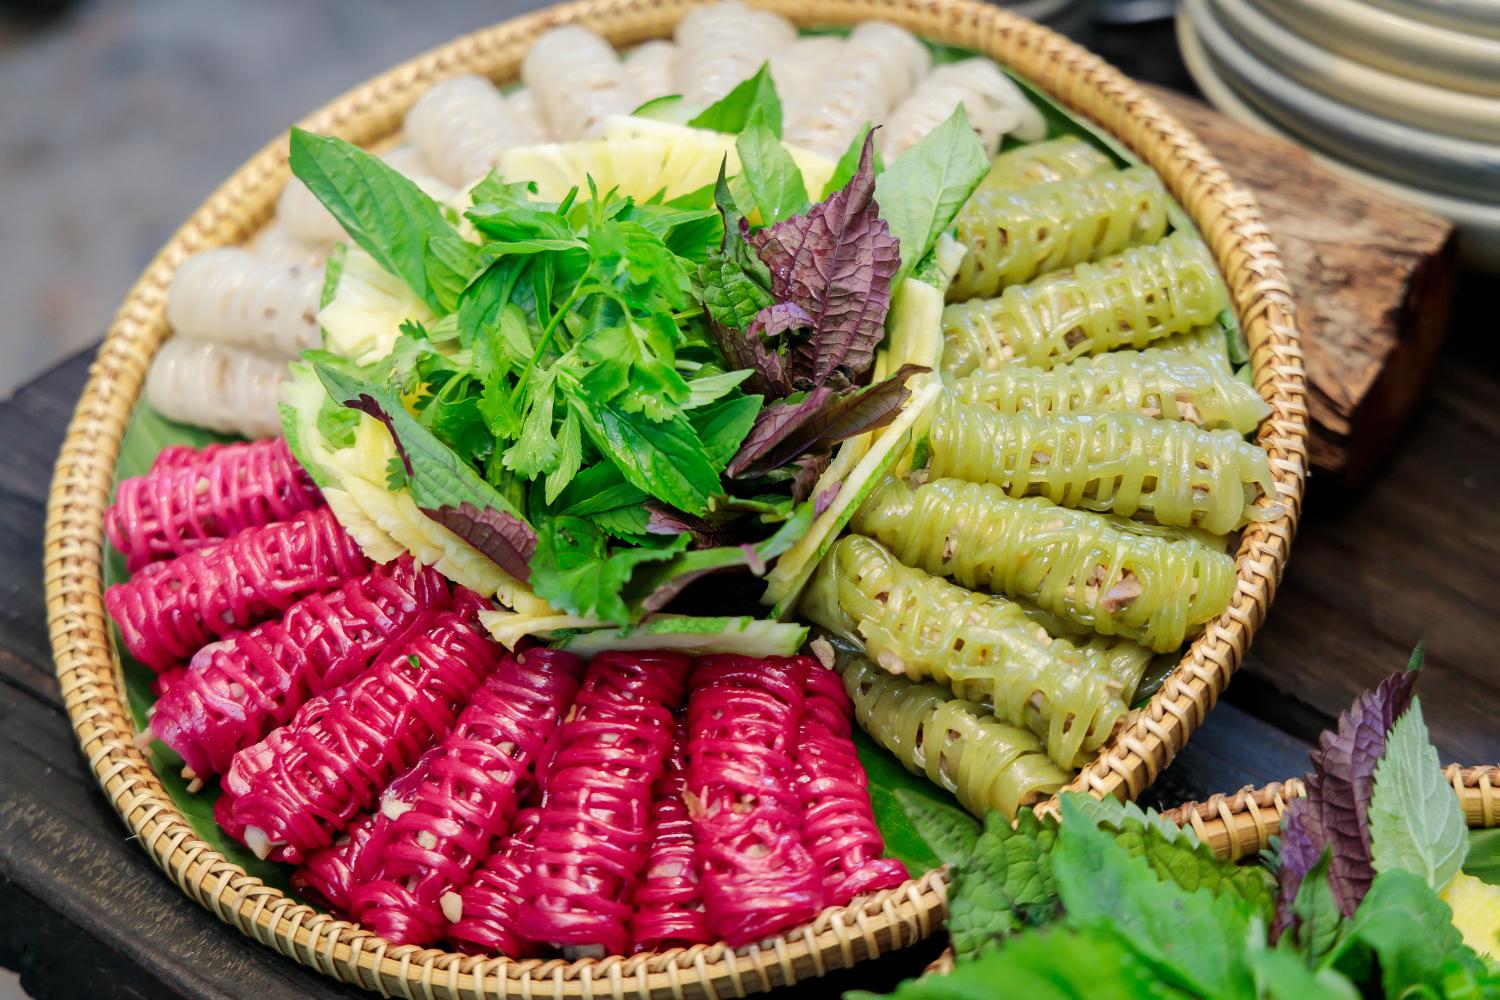 các nghệ nhân ẩm thực Việt Nam 8 Bánh nghệ Gò Công khiến thực khách trầm trồ vì công phu và đẹp mắt